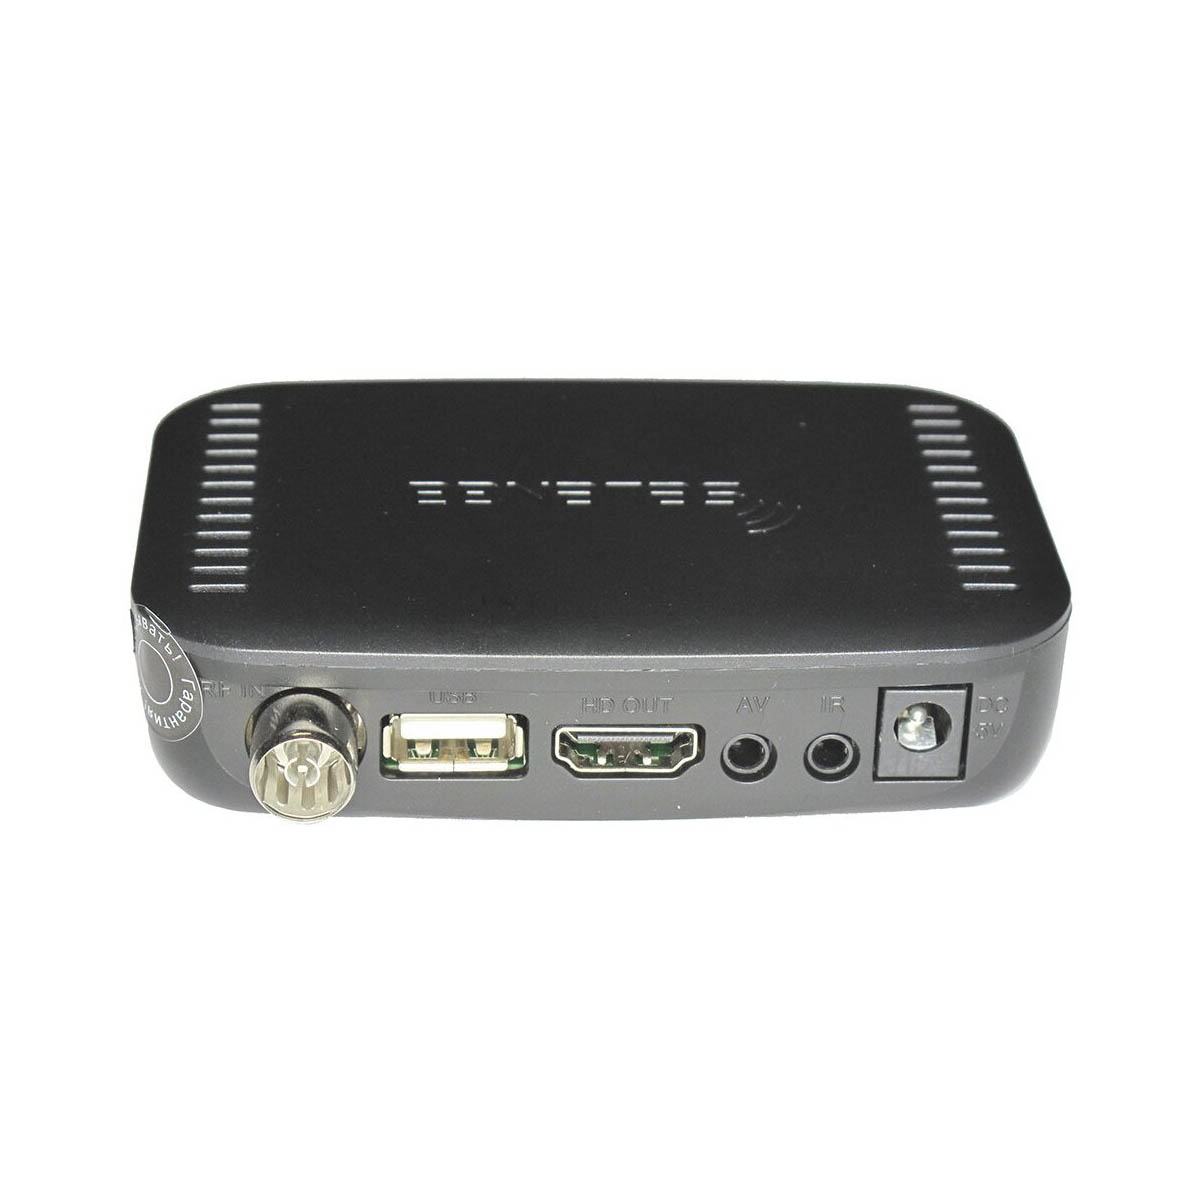 Цифровой эфирный приёмник, ТВ приставка SELENGA T20DI, DVB-T2, DVB-С, цвет черный